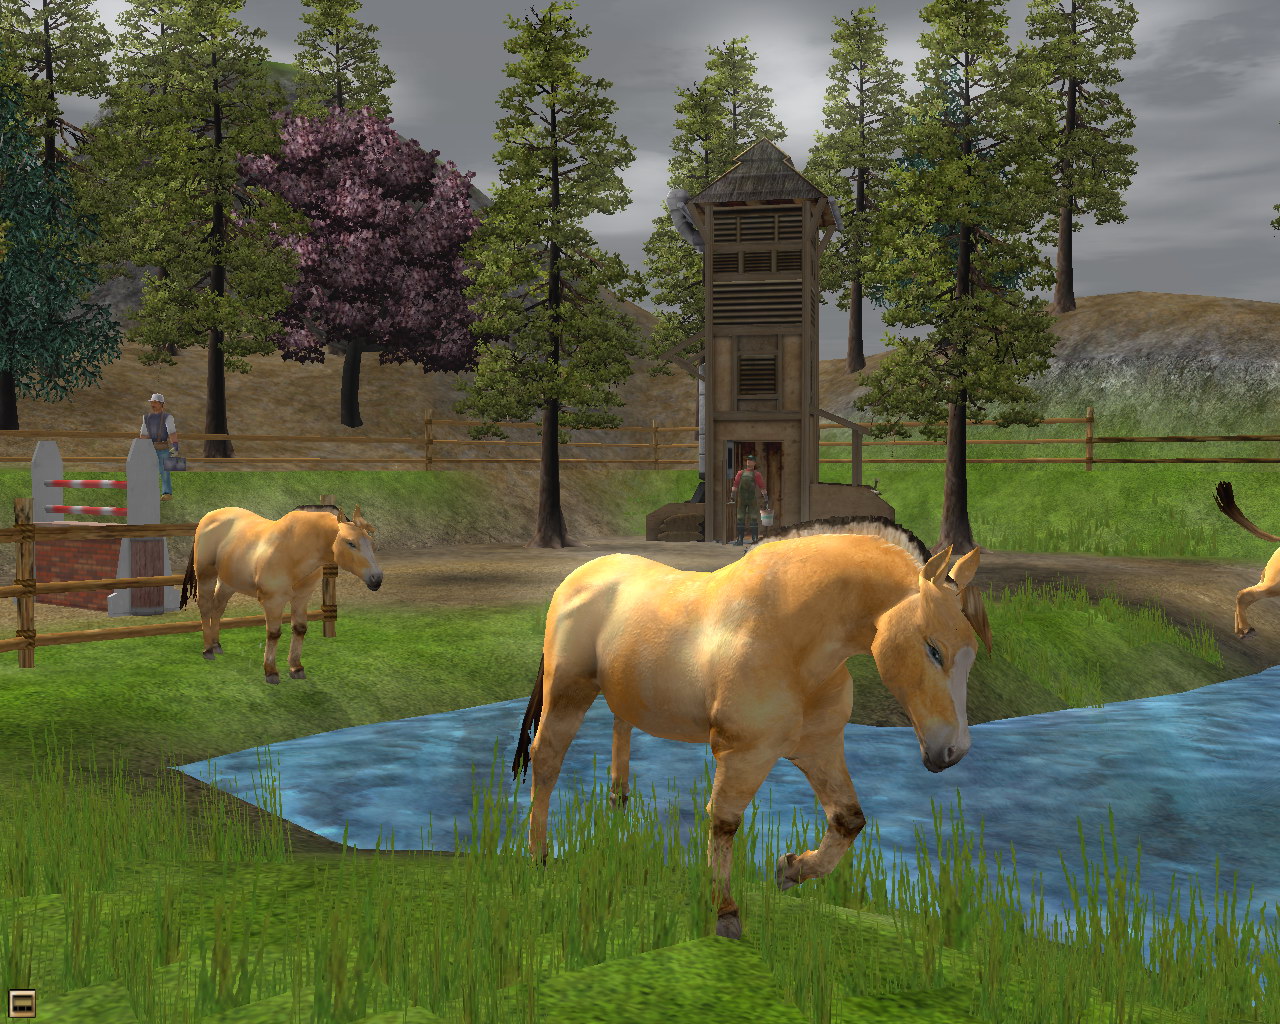 Wildlife Park 2: Horses На водопое